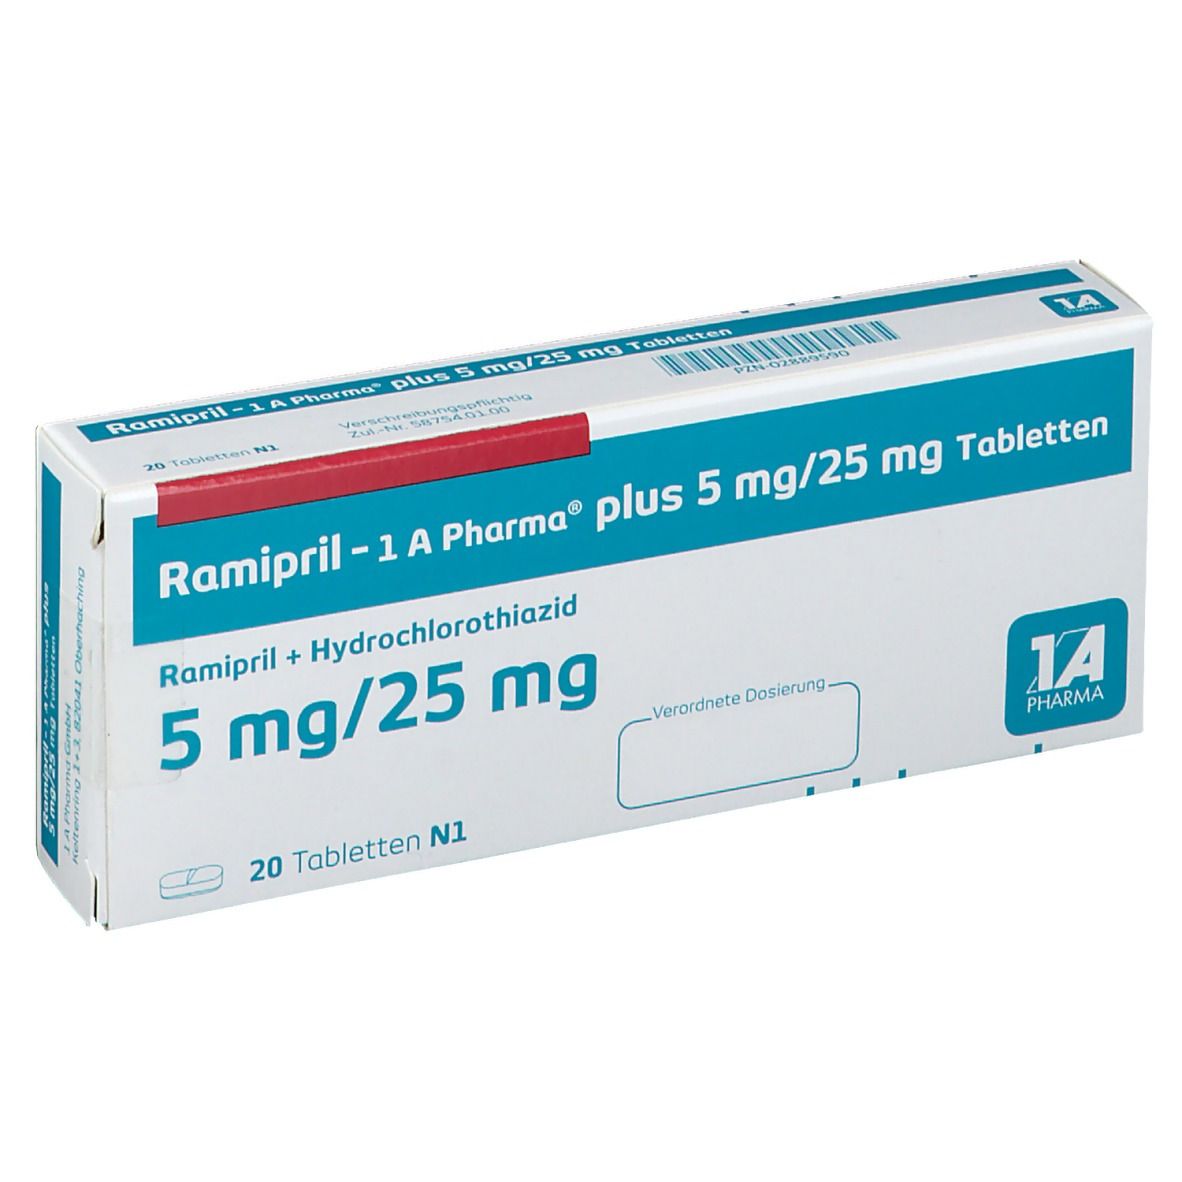 Ramipril - 1 A Pharma® plus 5 mg/25 mg